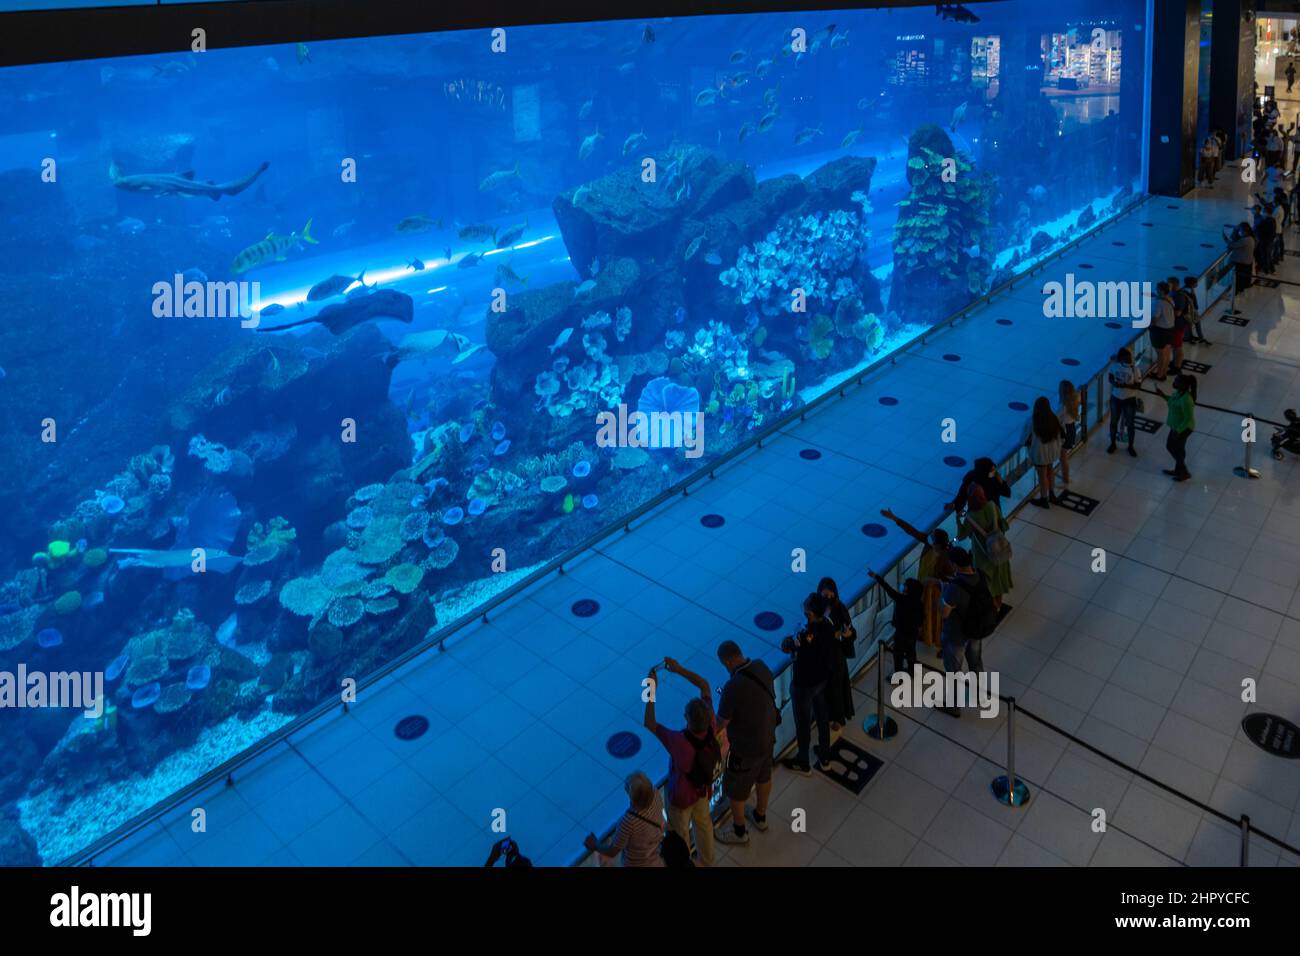 Aquarium inside Dubai Mall - world's largest shopping mall, United Arab Emirates Stock Photo